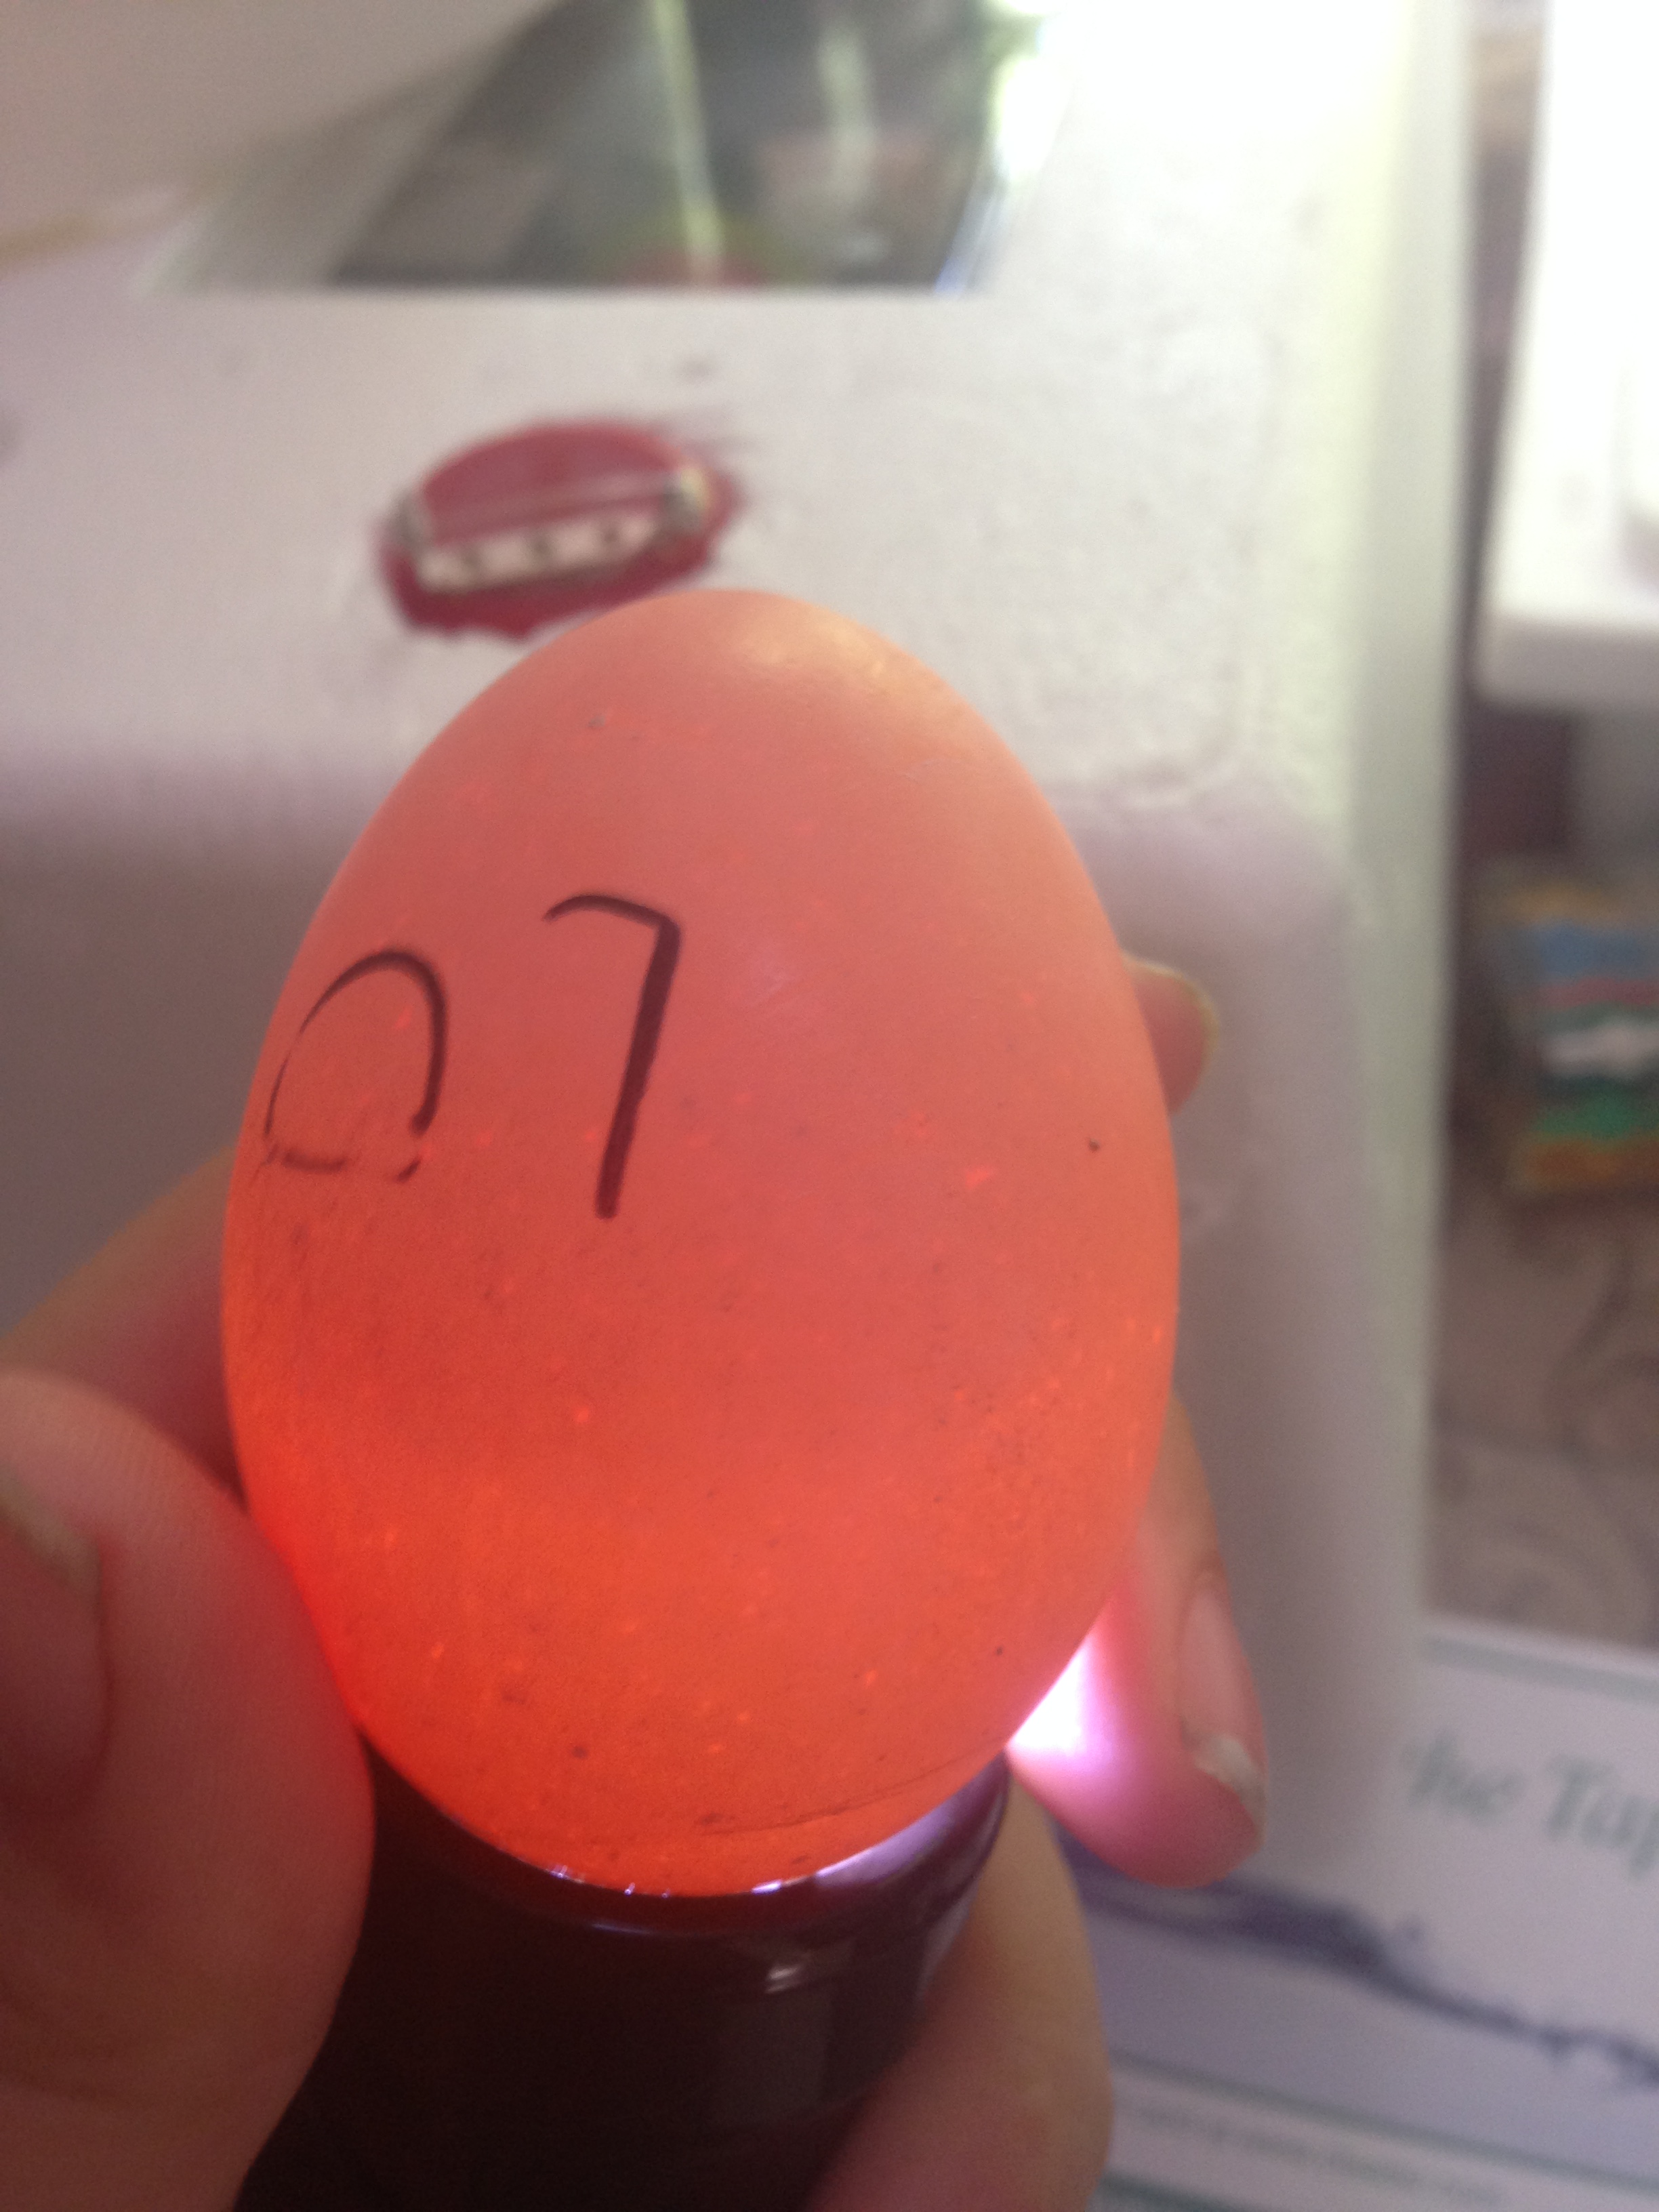 Egg 7 on day ~15